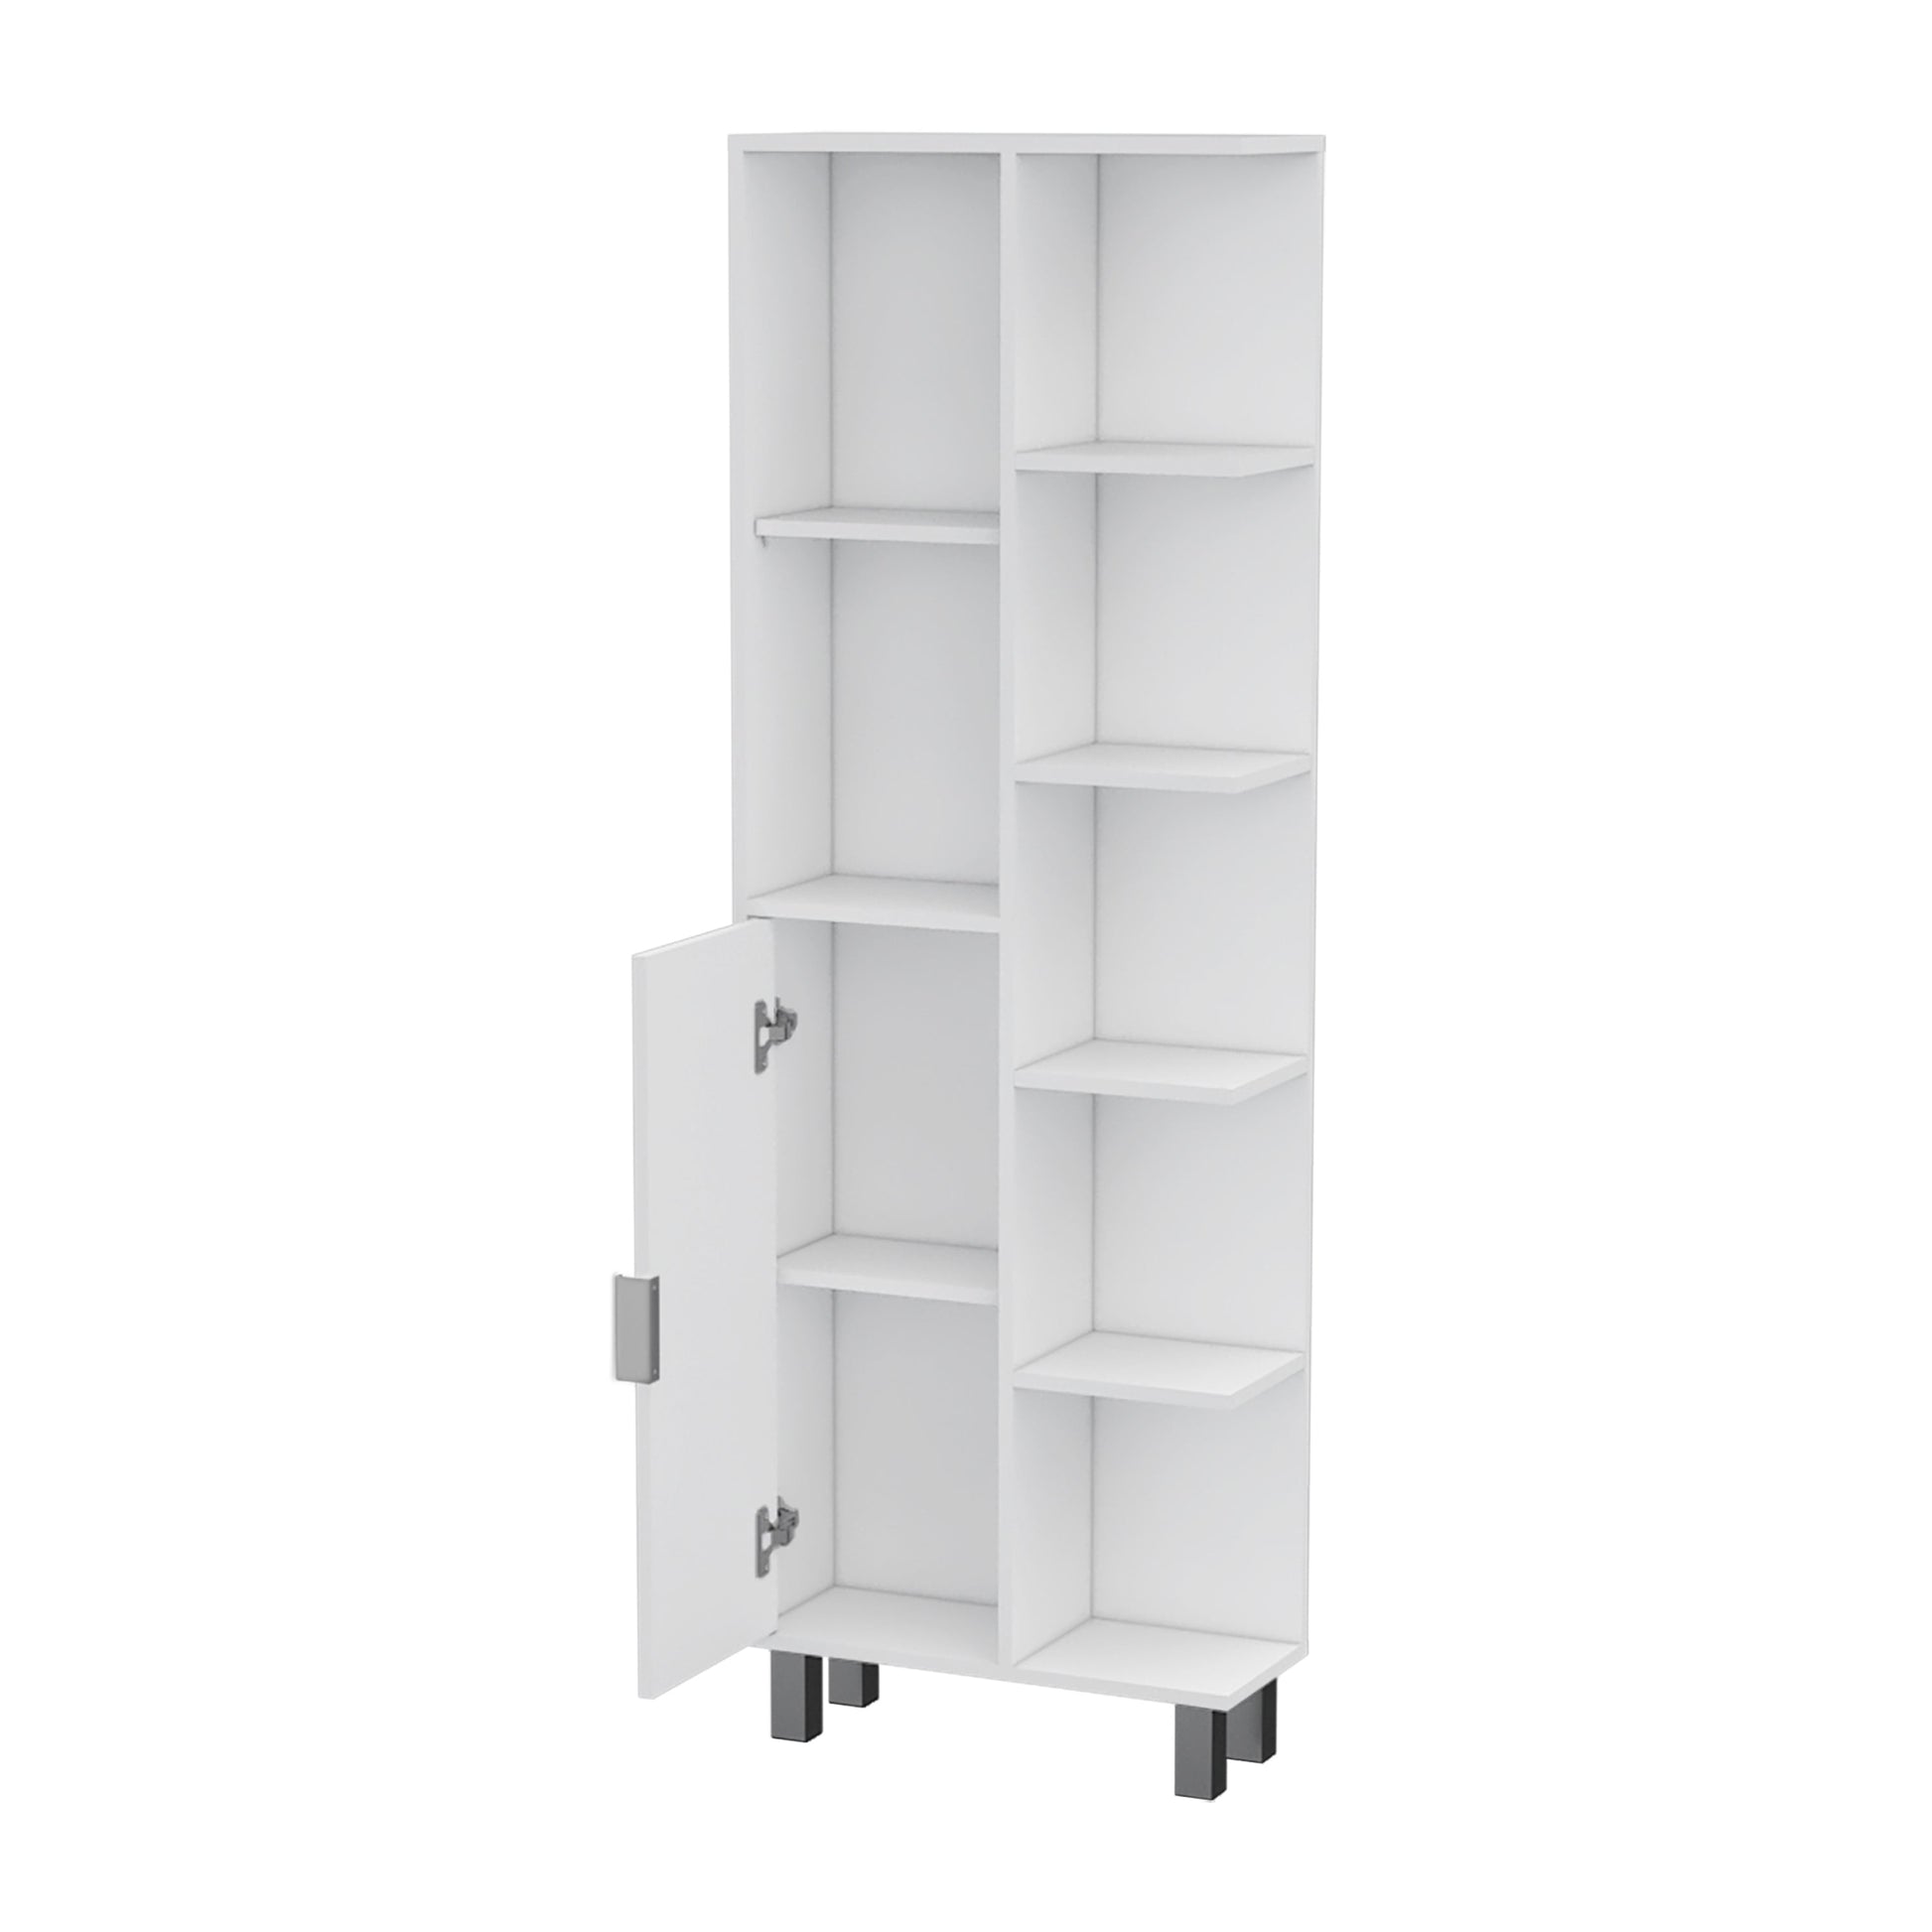 Natalie White 9 Shelf Linen Cabinet - White 1 5